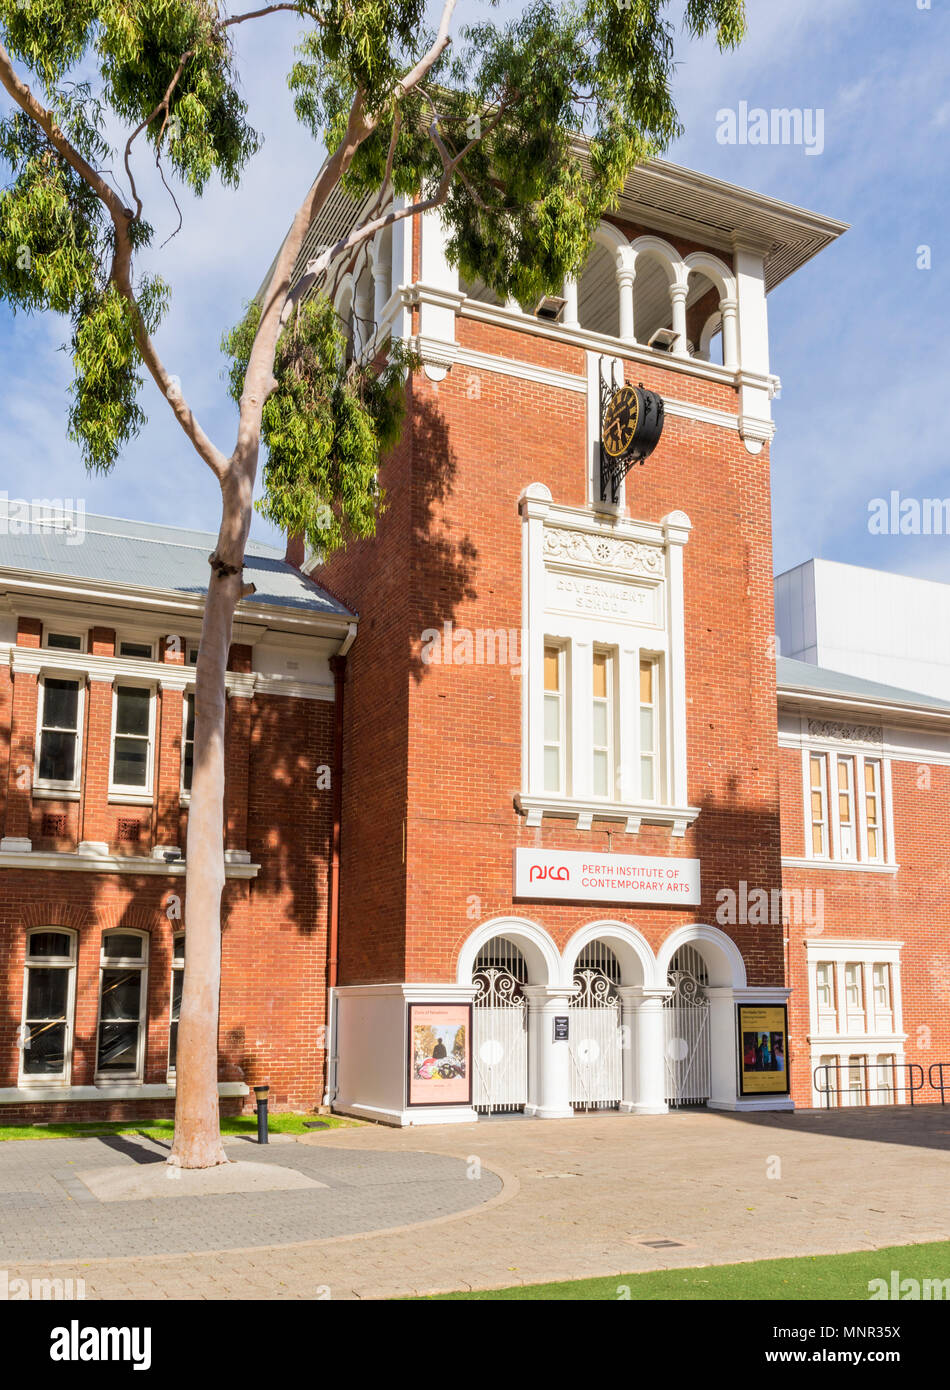 Institut des Arts Contemporains de Perth dans l'ancien bâtiment de l'École centrale de Perth, Perth, Australie occidentale Banque D'Images